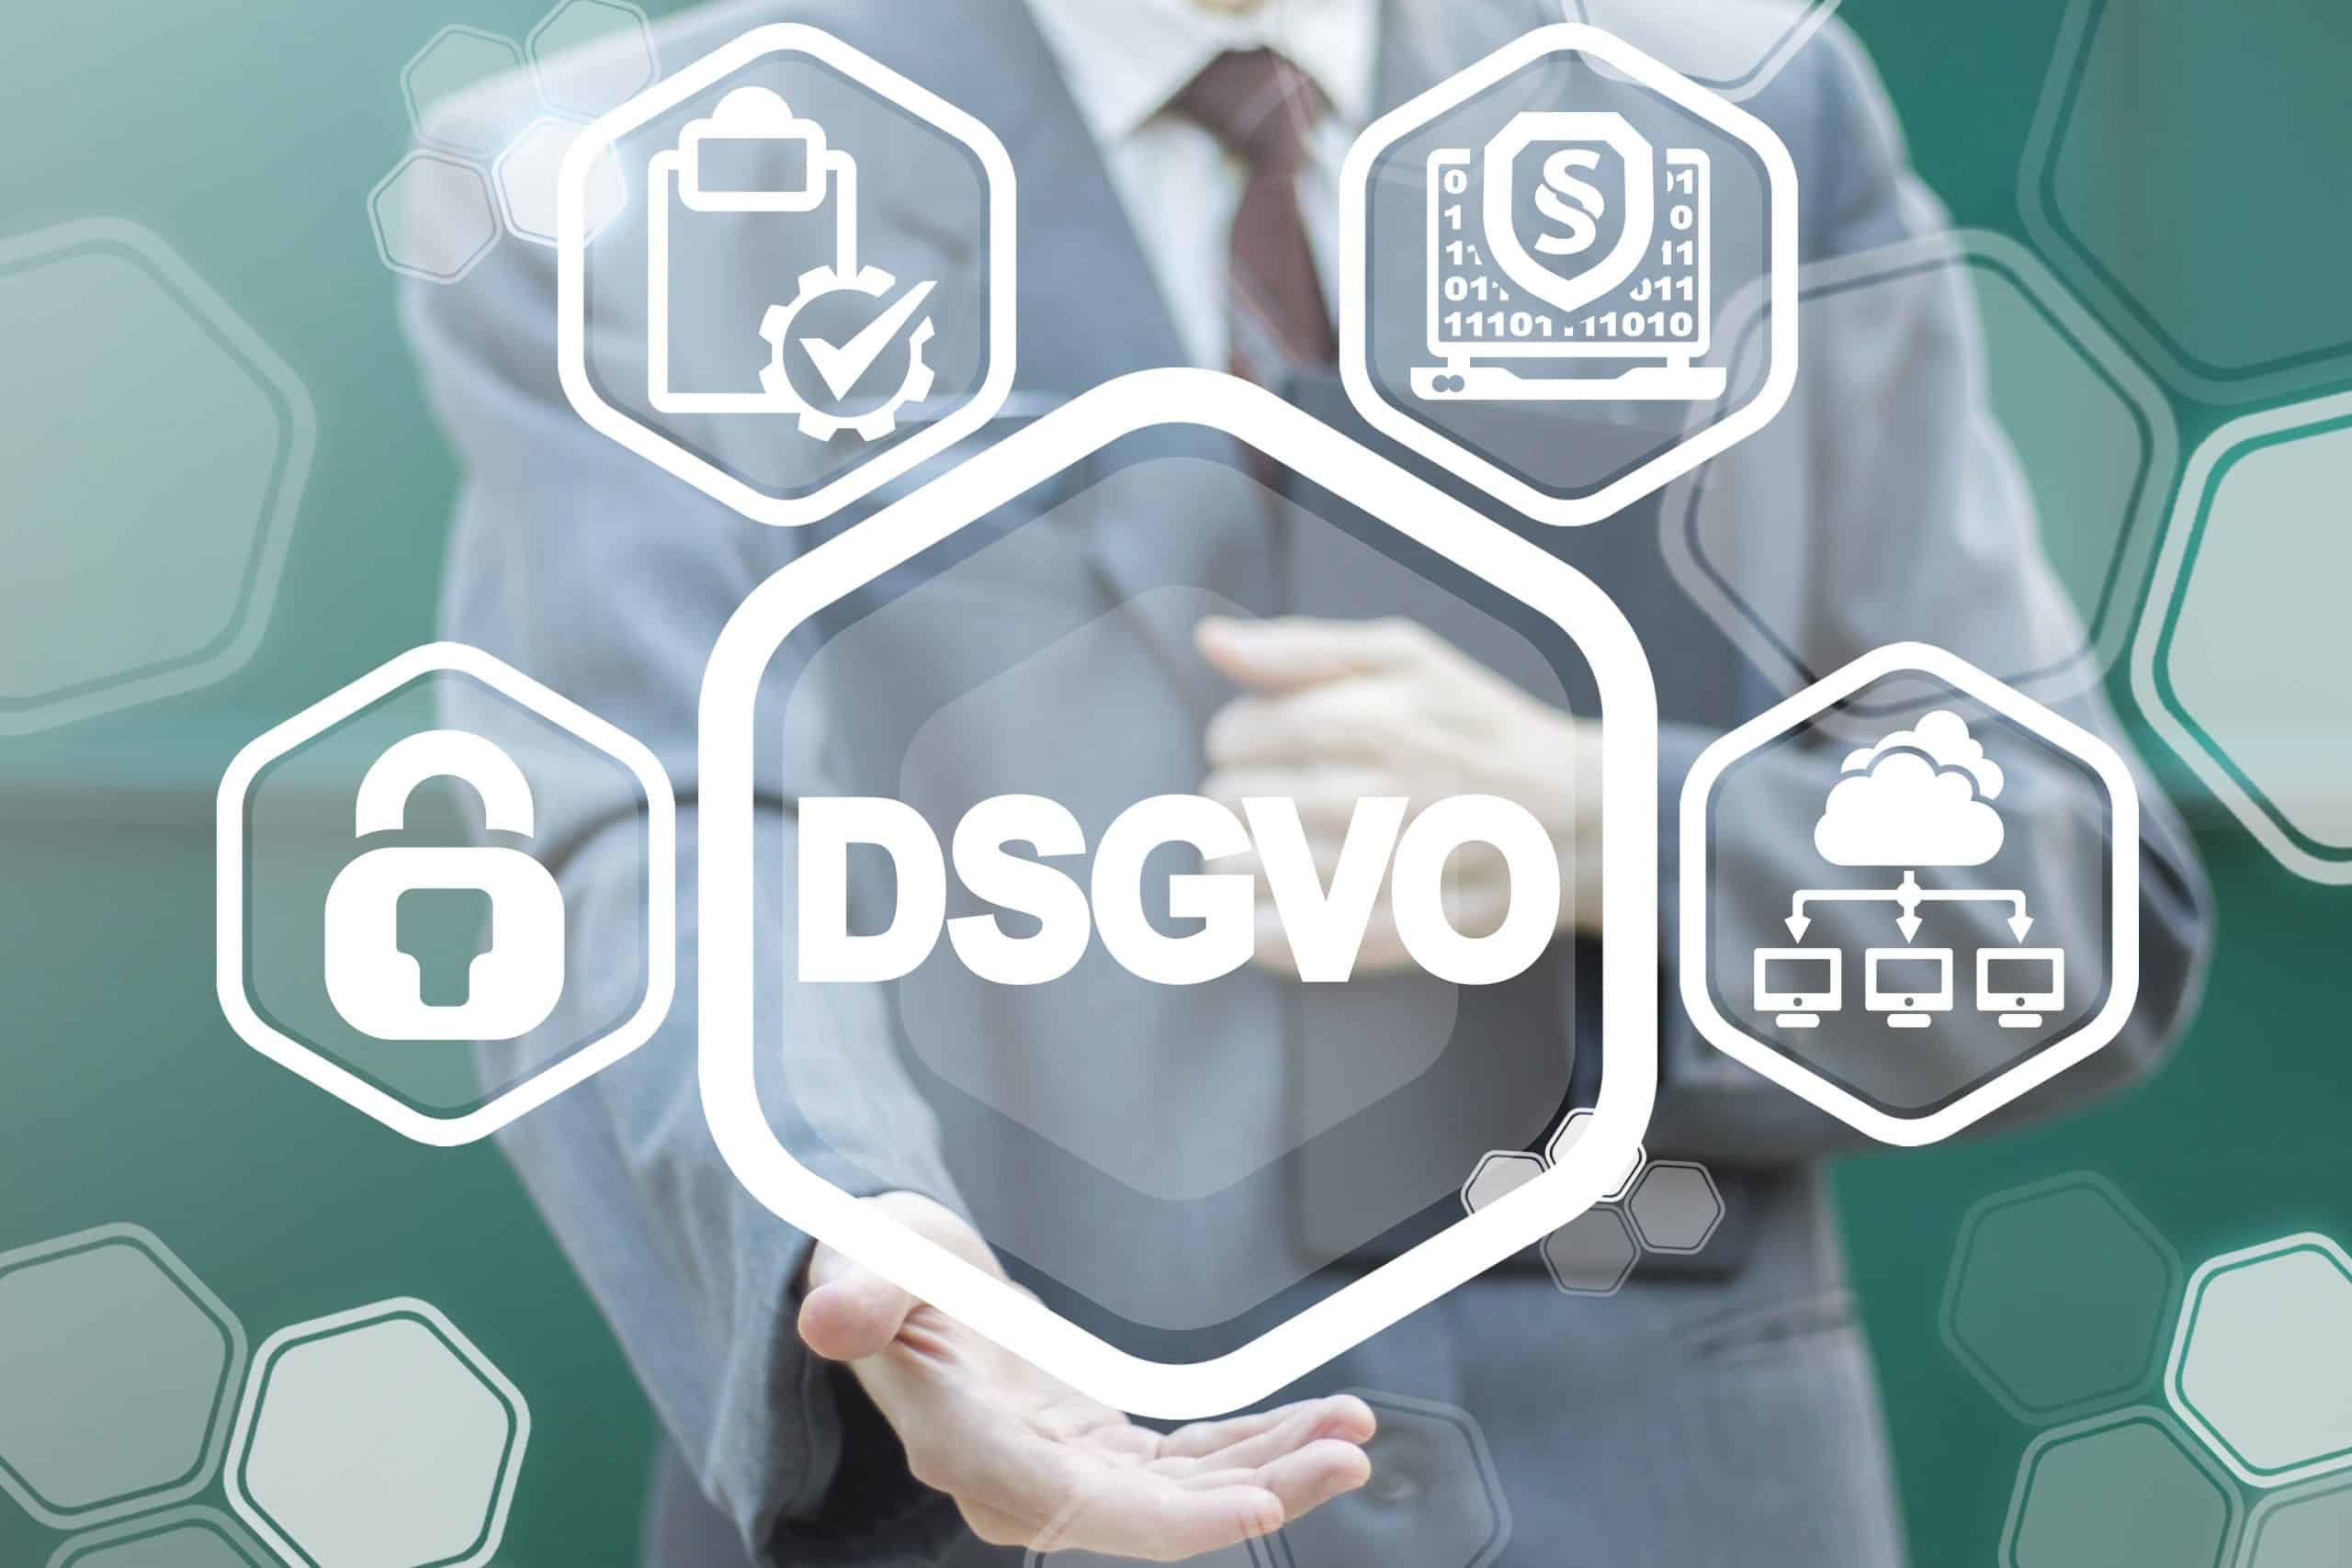 DSGVO Datenschutz